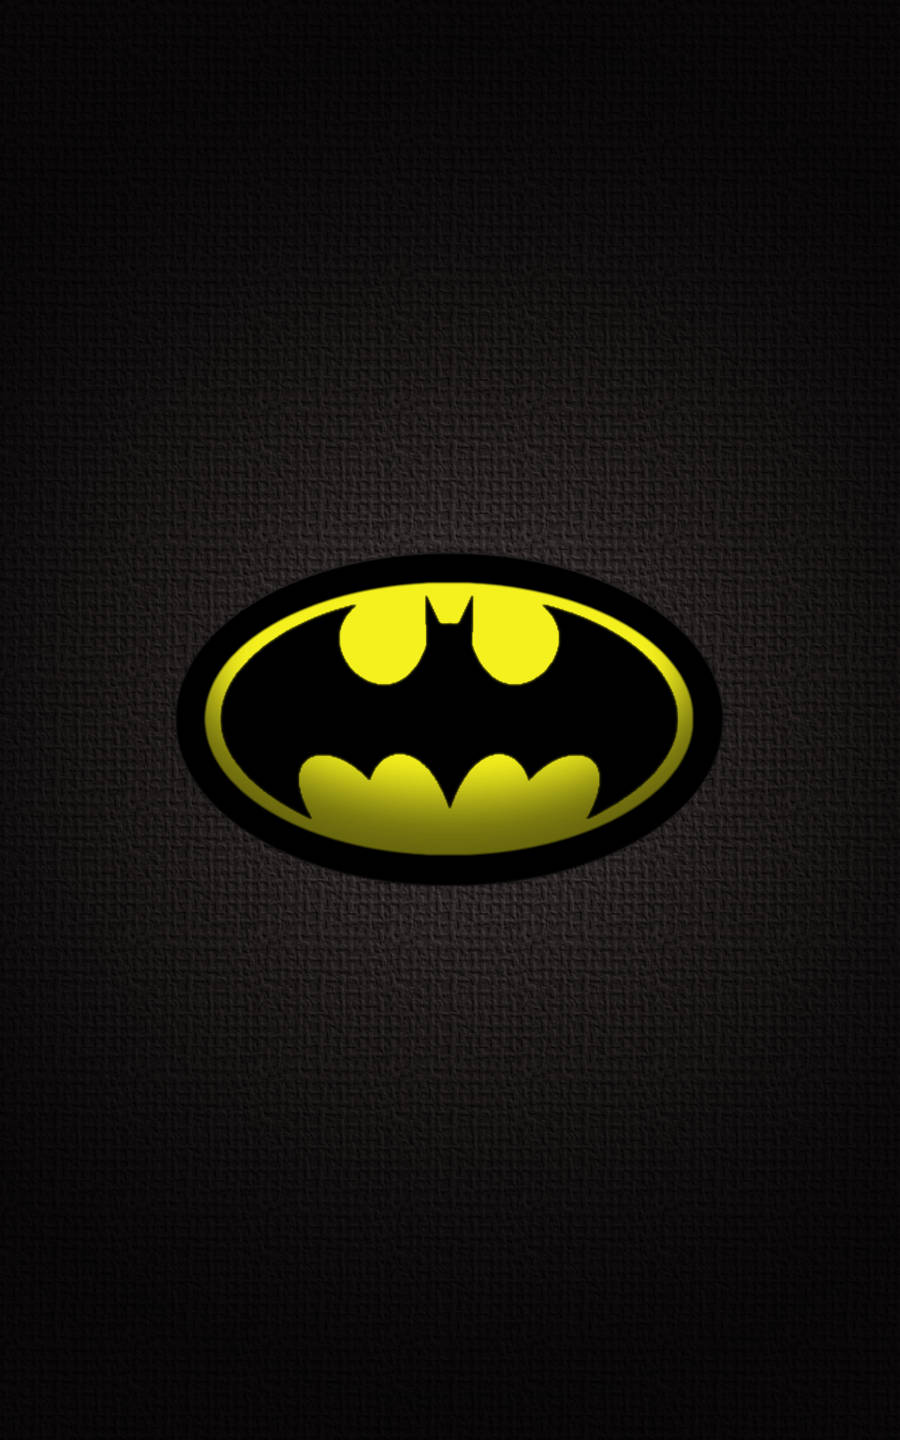 Ladda Ner Batmans Mörka Logga Som Iphone-bakgrundsbild. Wallpaper